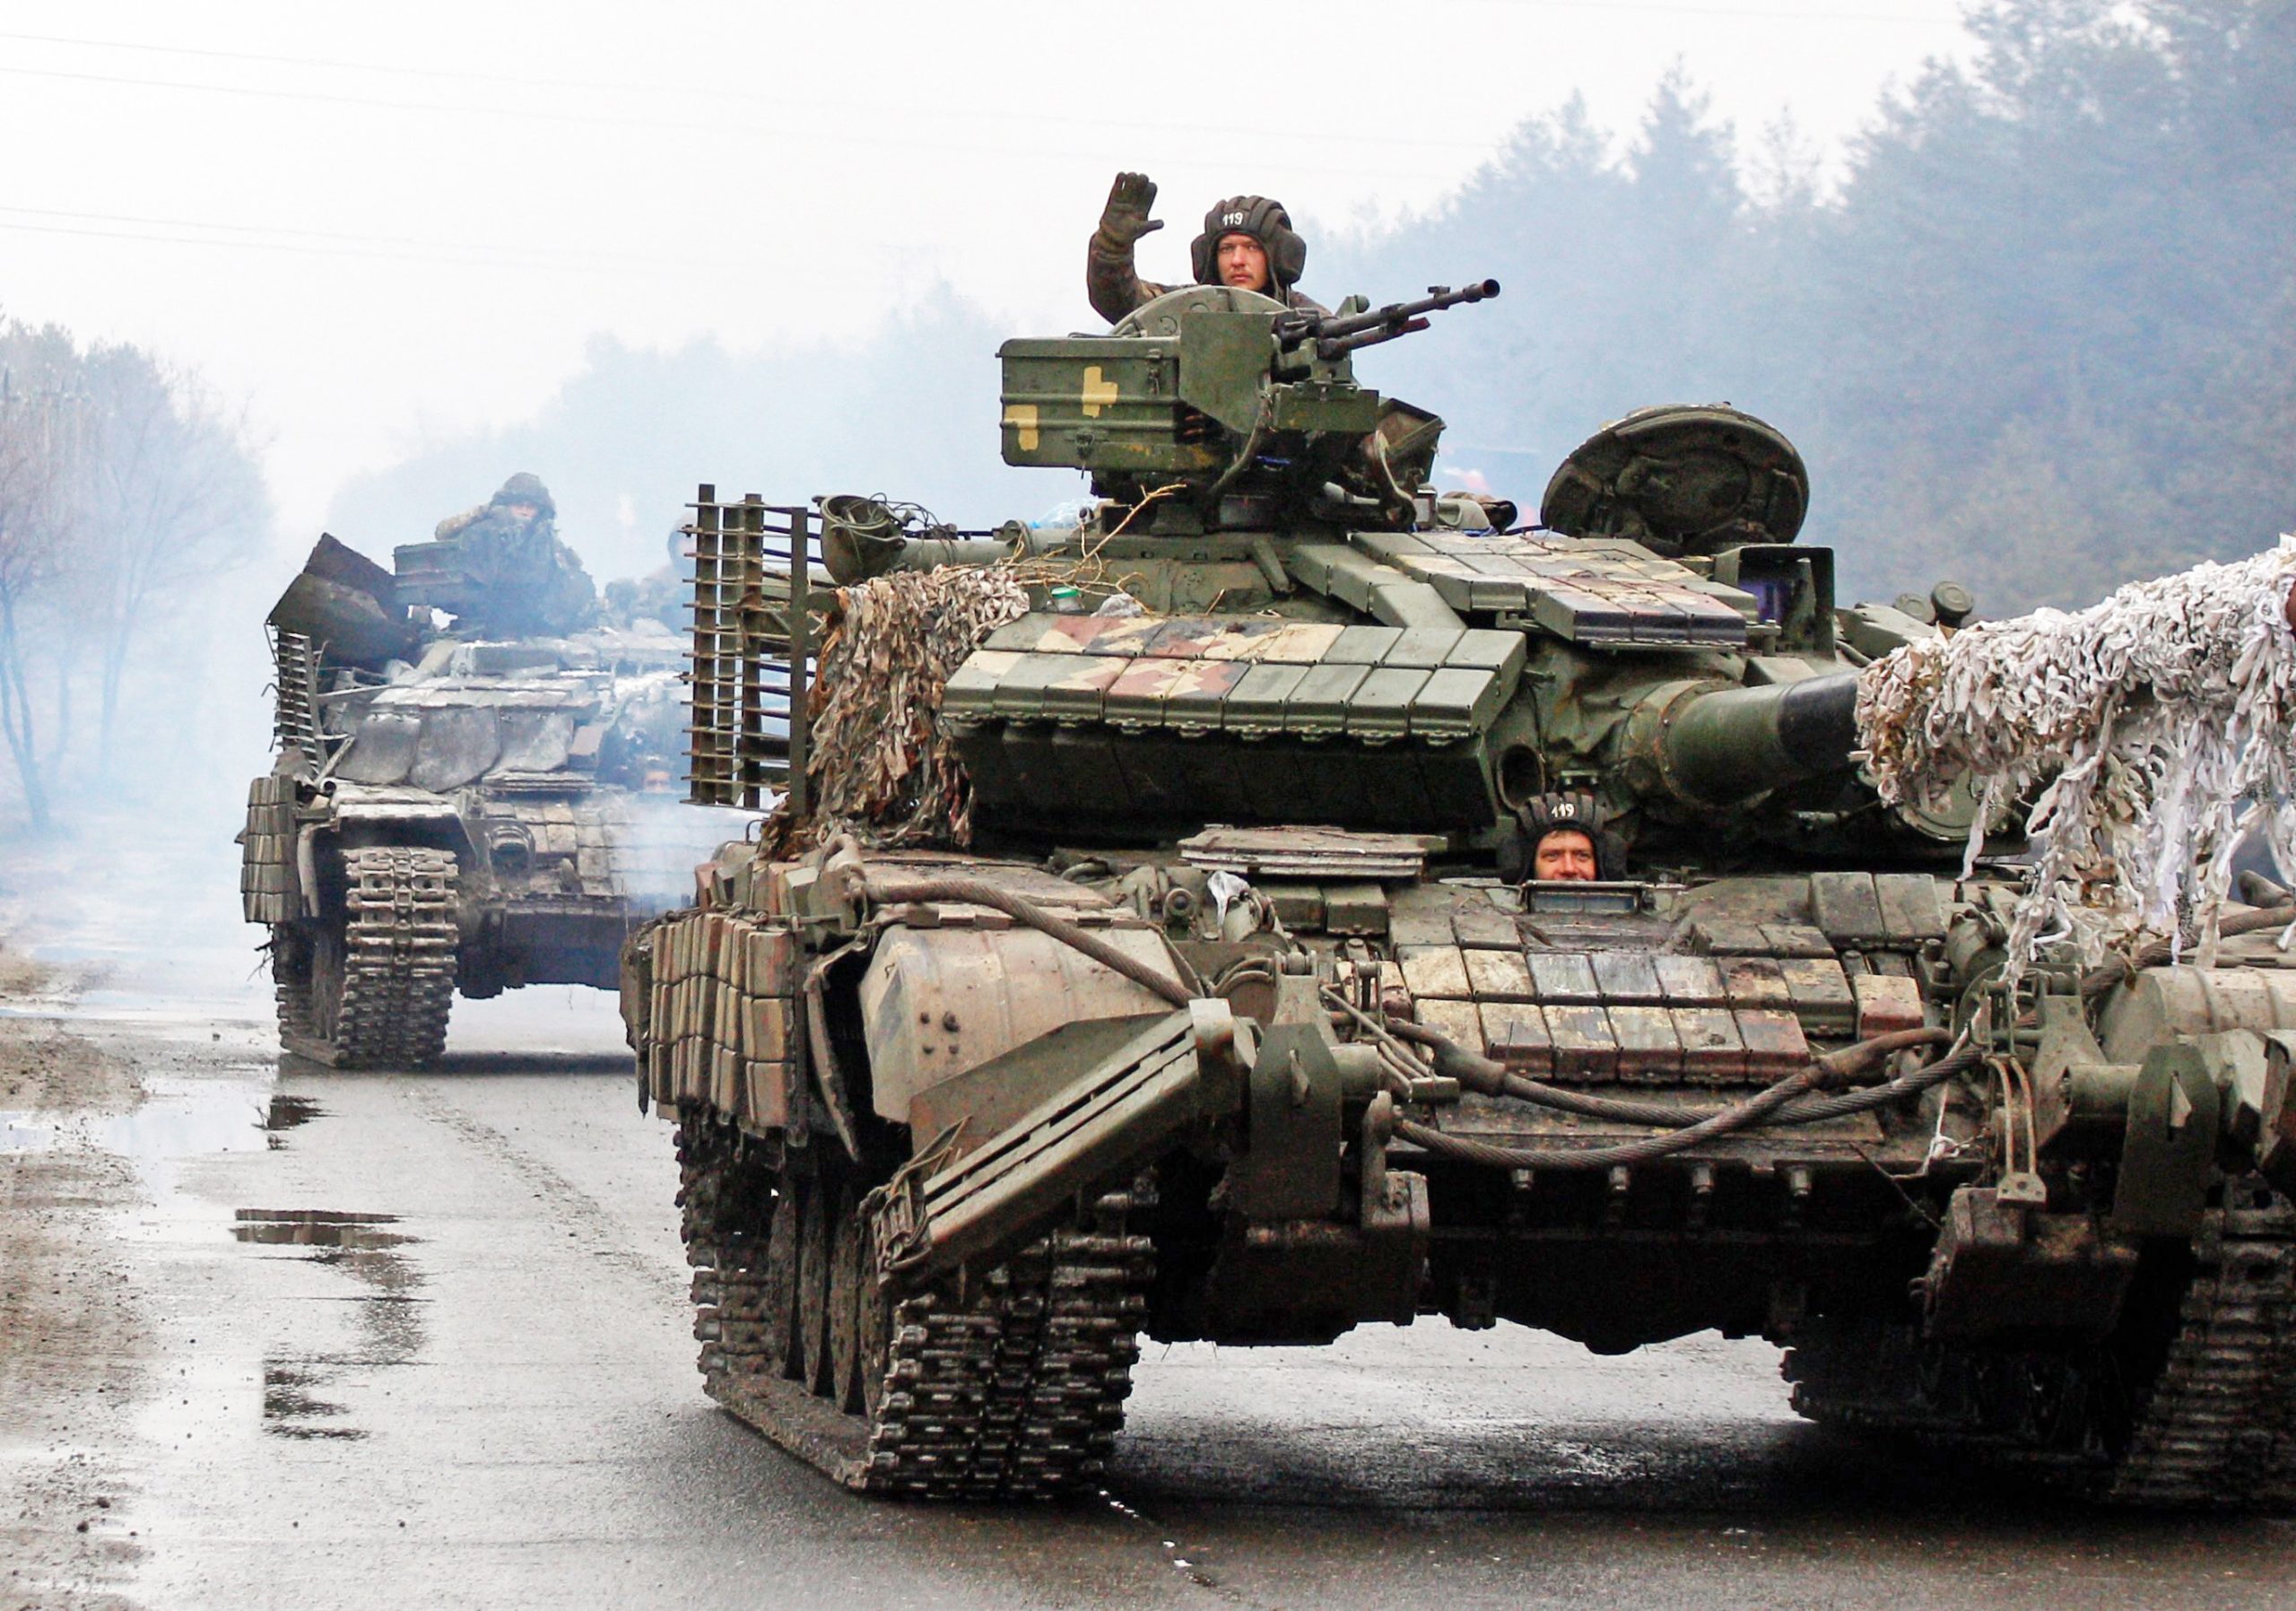 Οι Ουκρανοί έλαβαν εντολή να αποχωρήσουν από το Σεβεροντονέτσκ! – Το Κίεβο παραδέχεται την ήττα